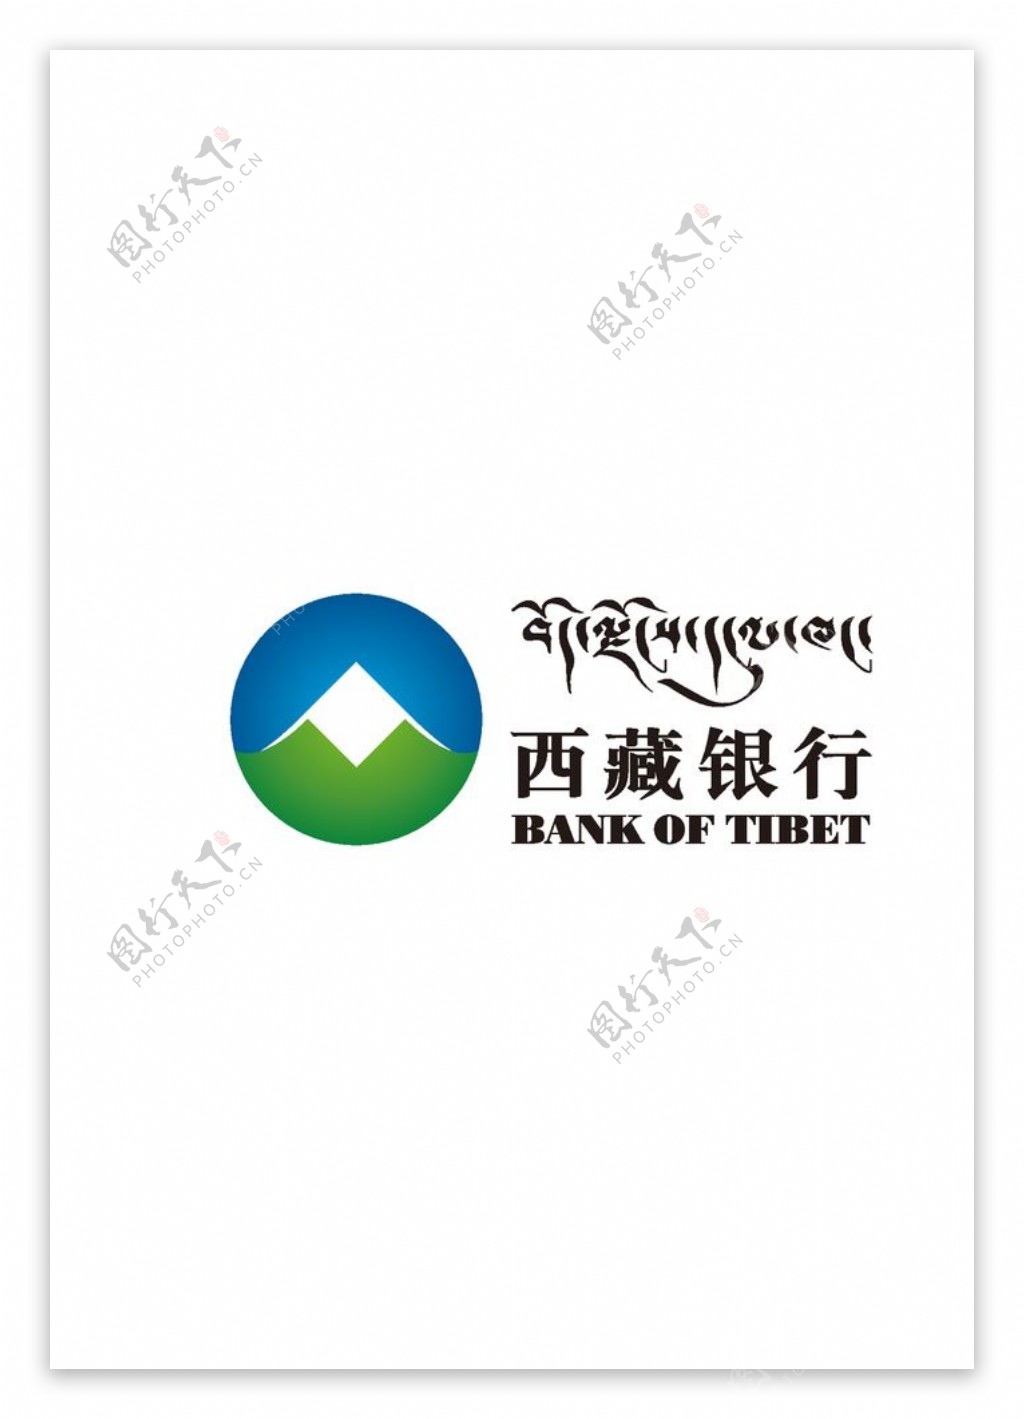 西藏银行logo图片